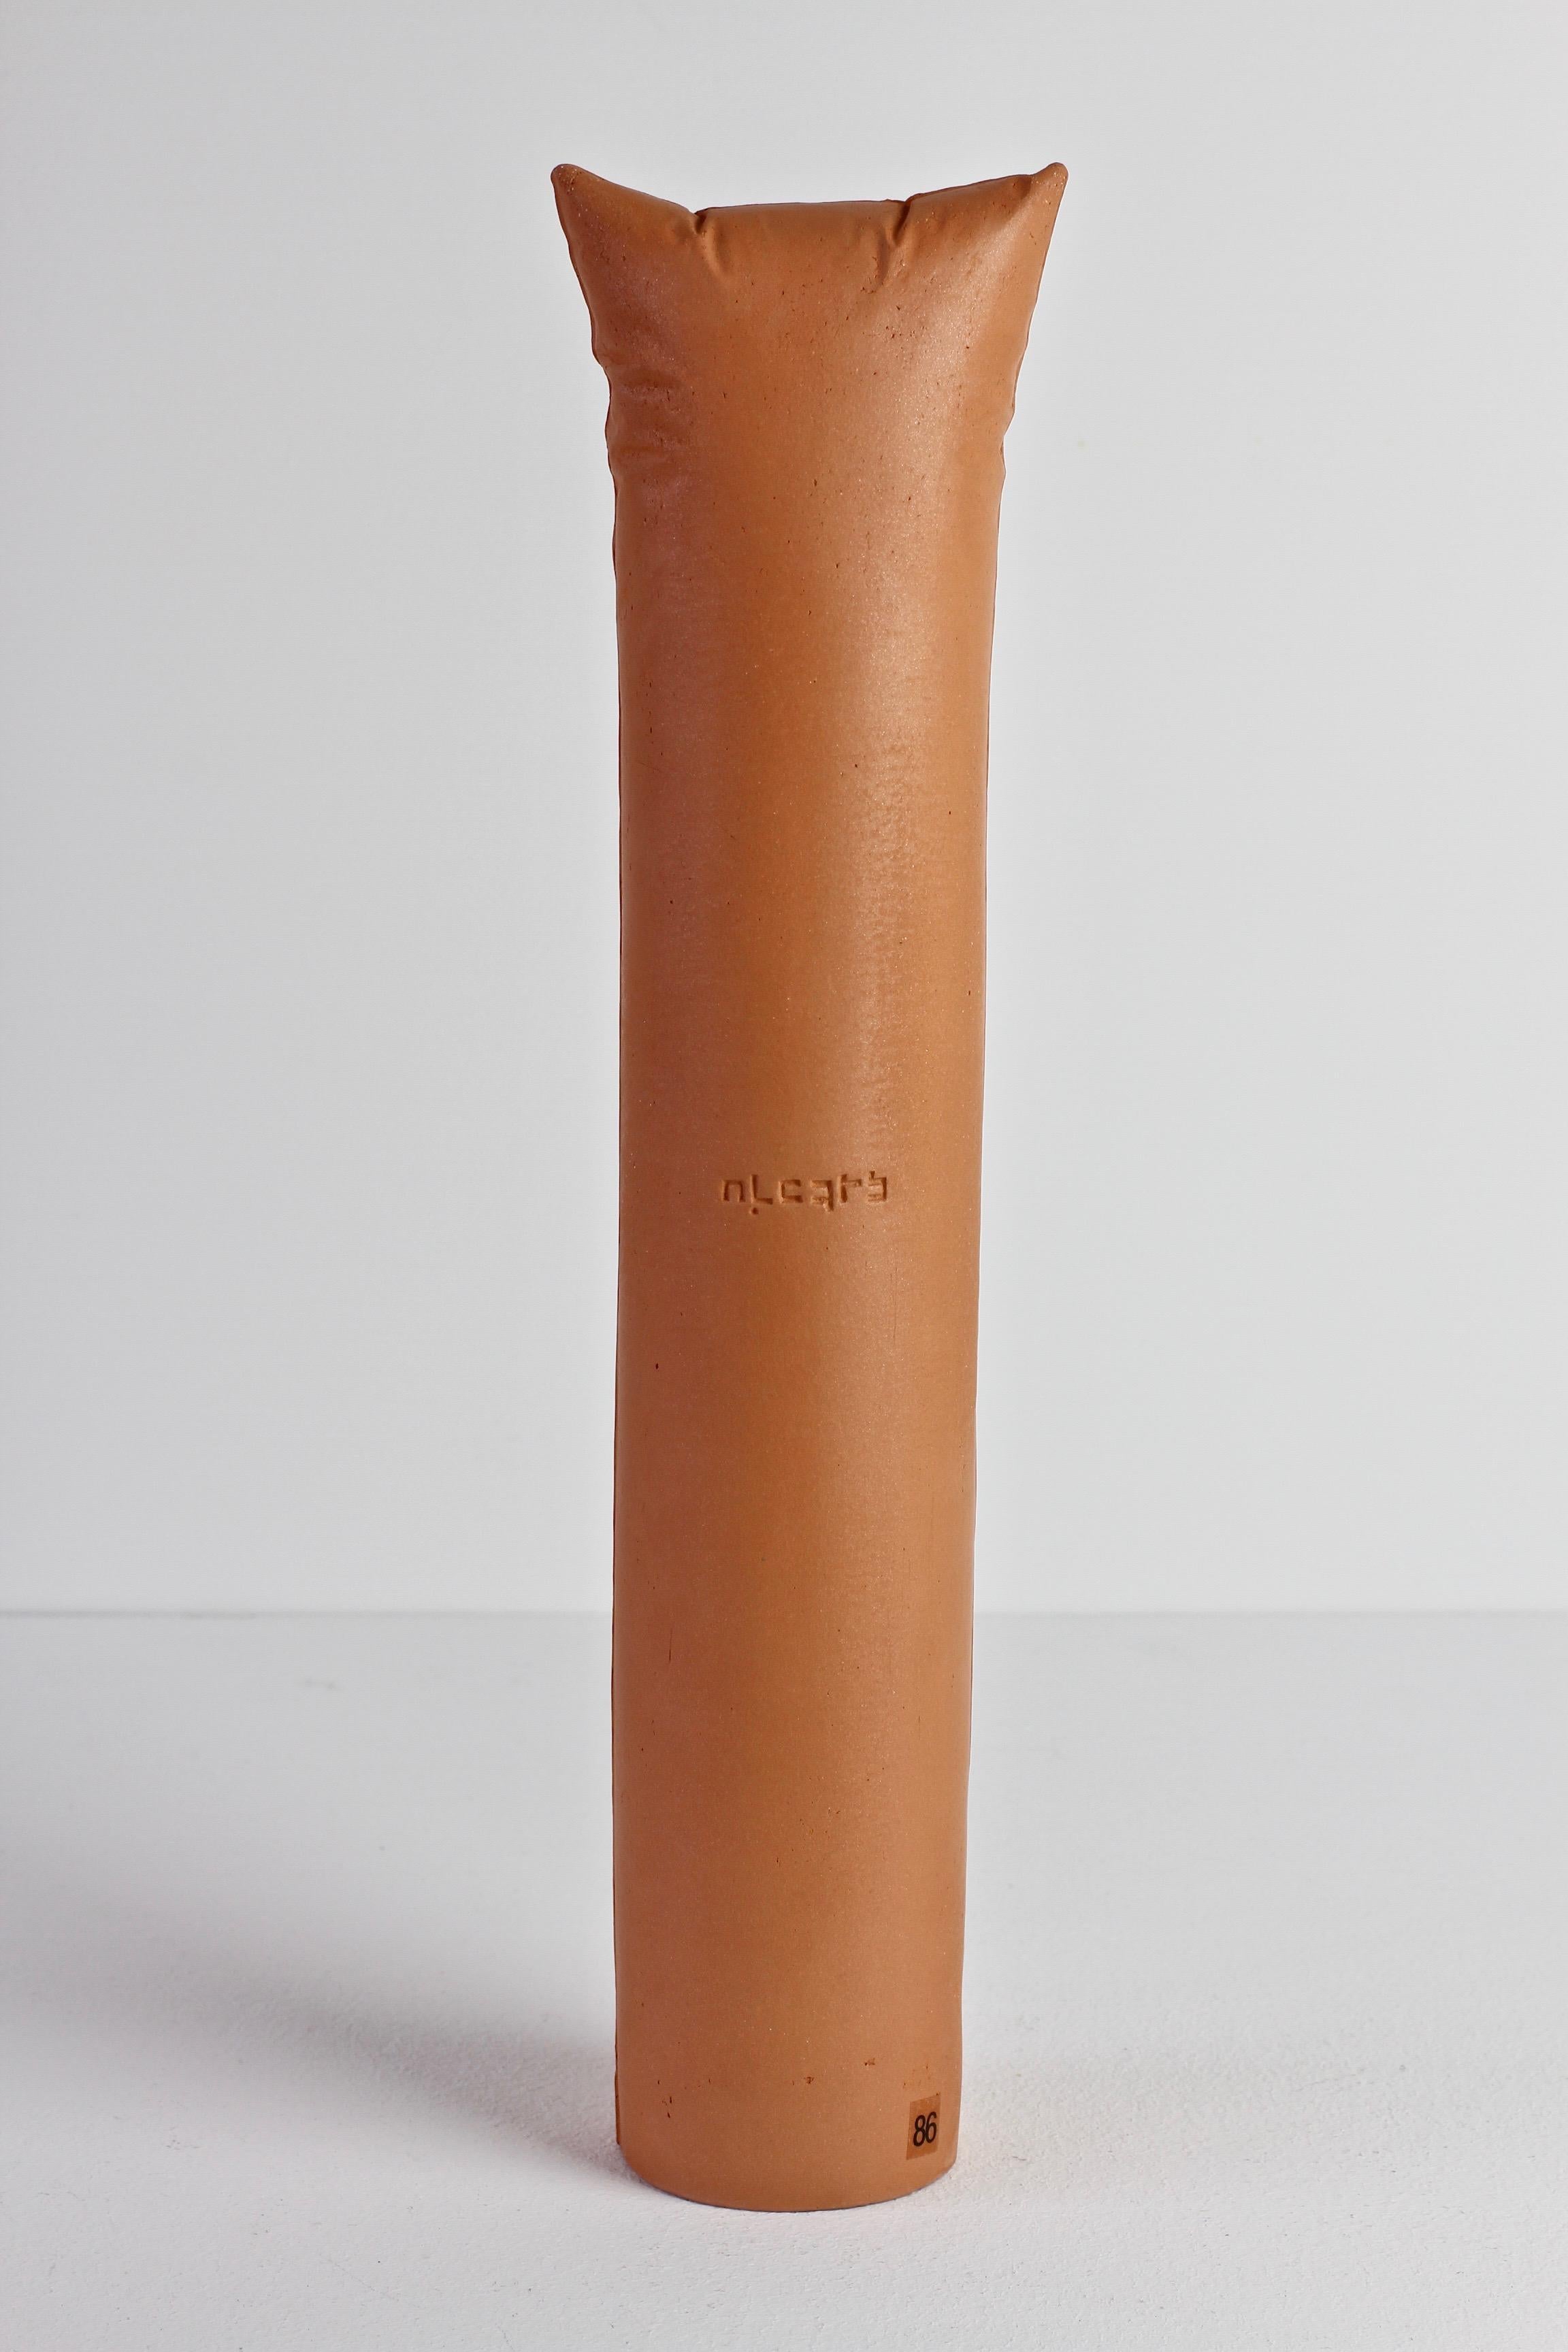 Oeuvre d'art en céramique vintage à réalisme abstrait de Gabriele Pütz, fabriquée en Allemagne, 1982. Cette œuvre est composée d'une tour / d'un pilier rond en argile avec des détails de bord en forme de coussin. Sur le corps de la tour est inscrit